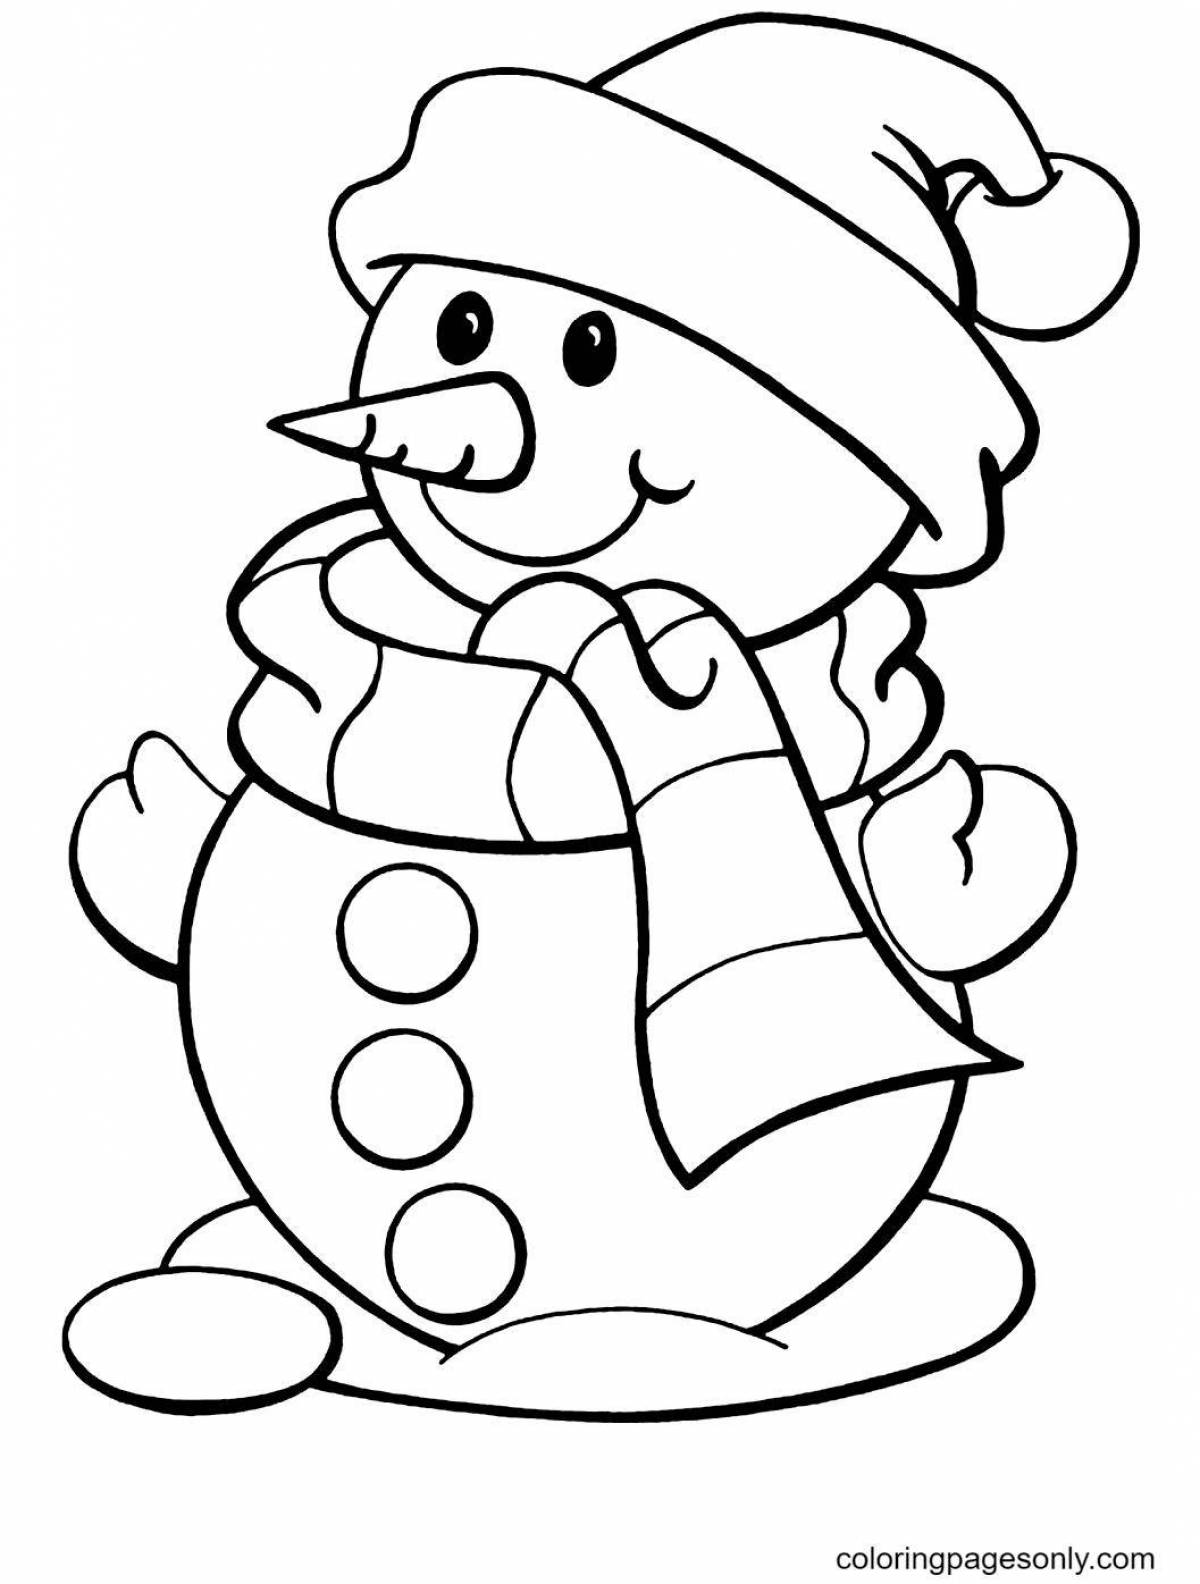 Праздничная раскраска смешной снеговик для детей